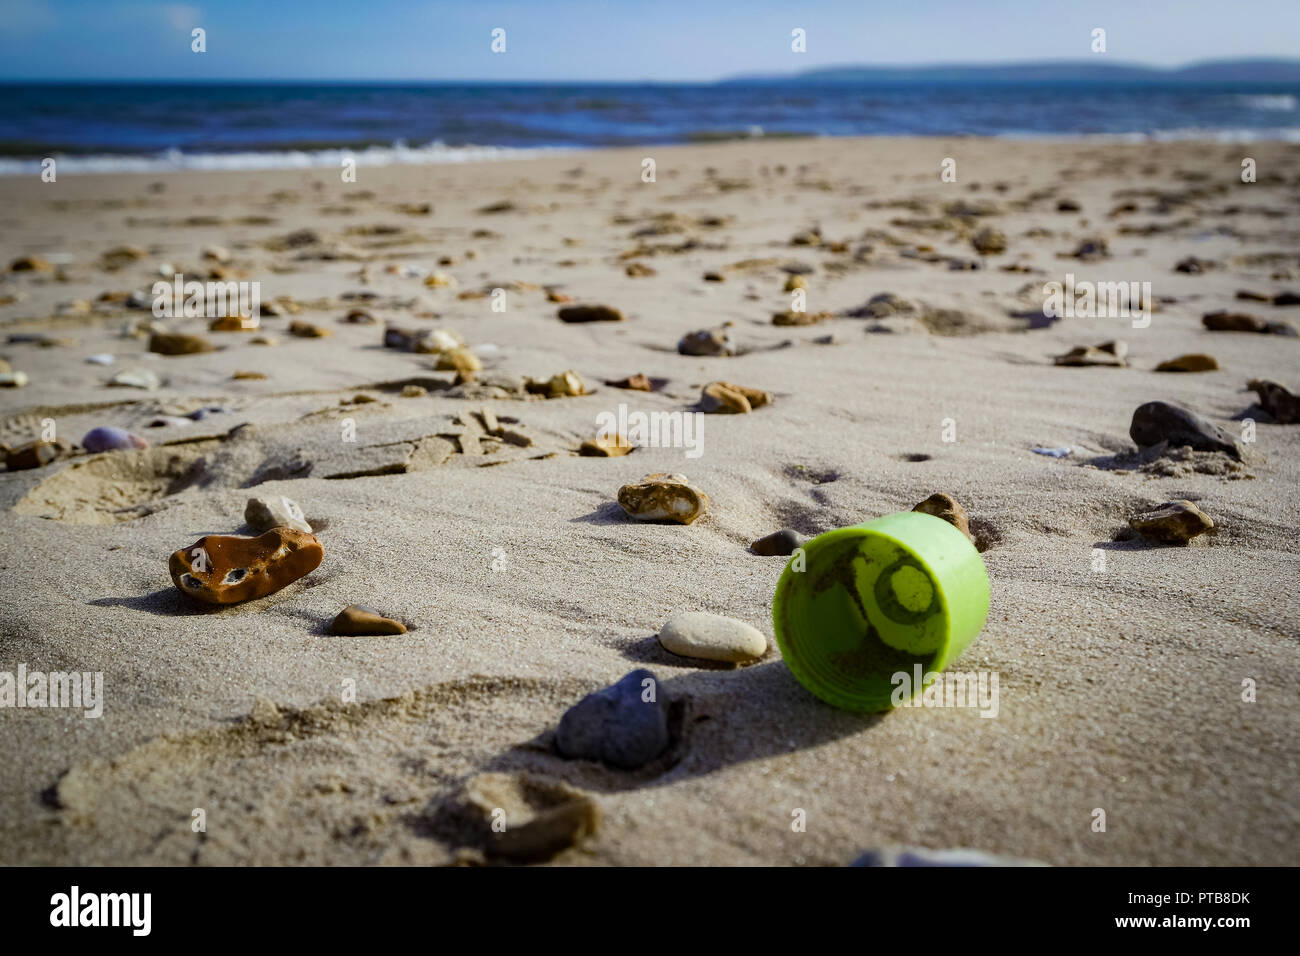 La basura de plástico se lavan en una playa, REINO UNIDO Foto de stock